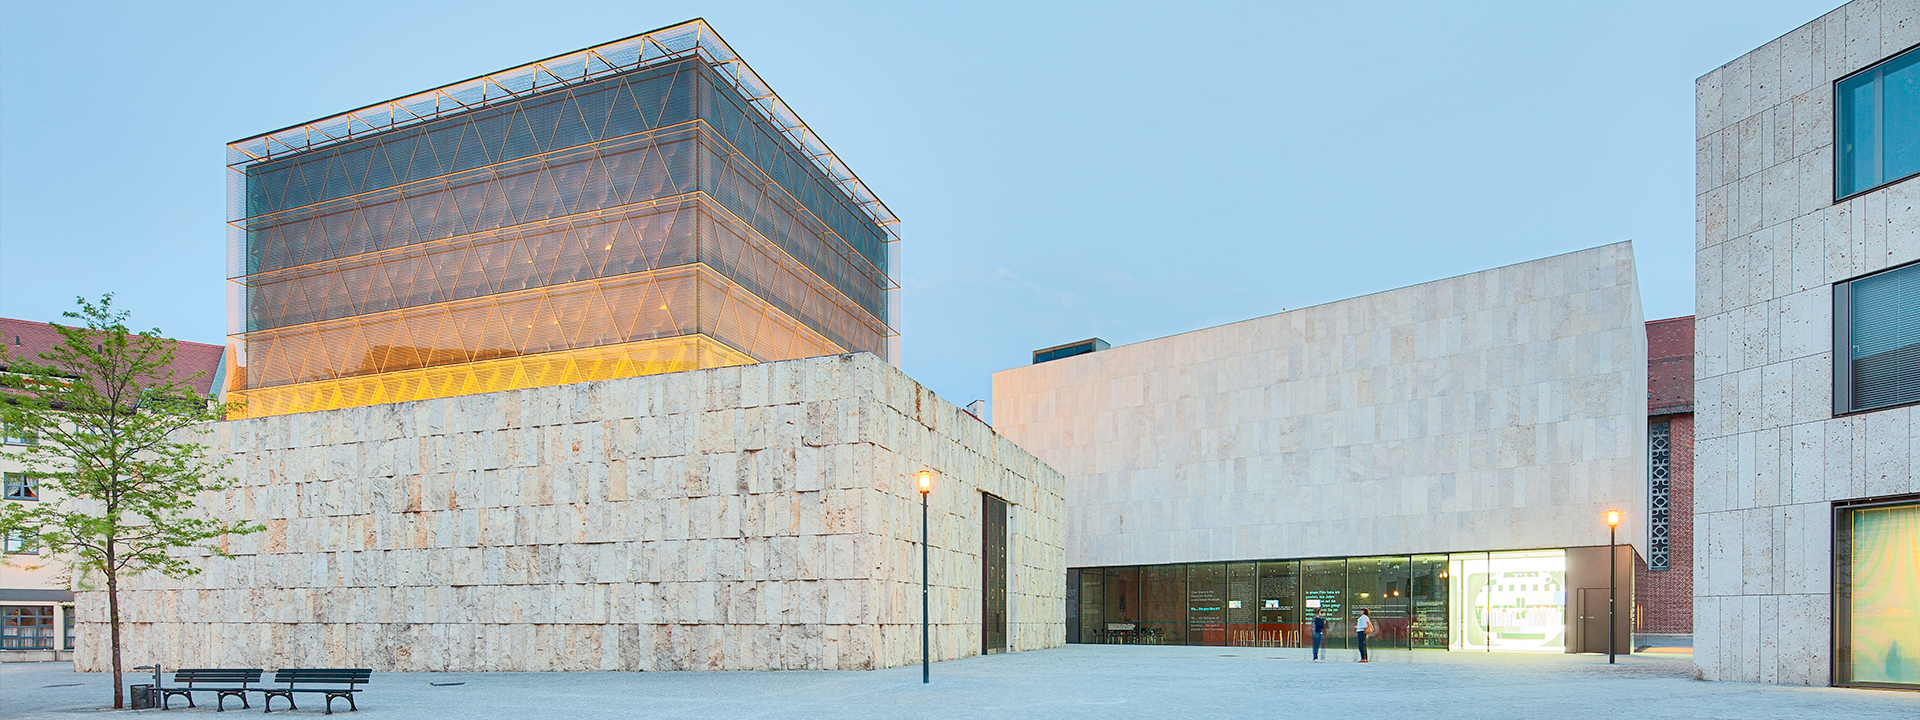 Das Jüdische Museum München zwischen Synagoge und jüdischem Gemeindezentrum © Martin Foddanu